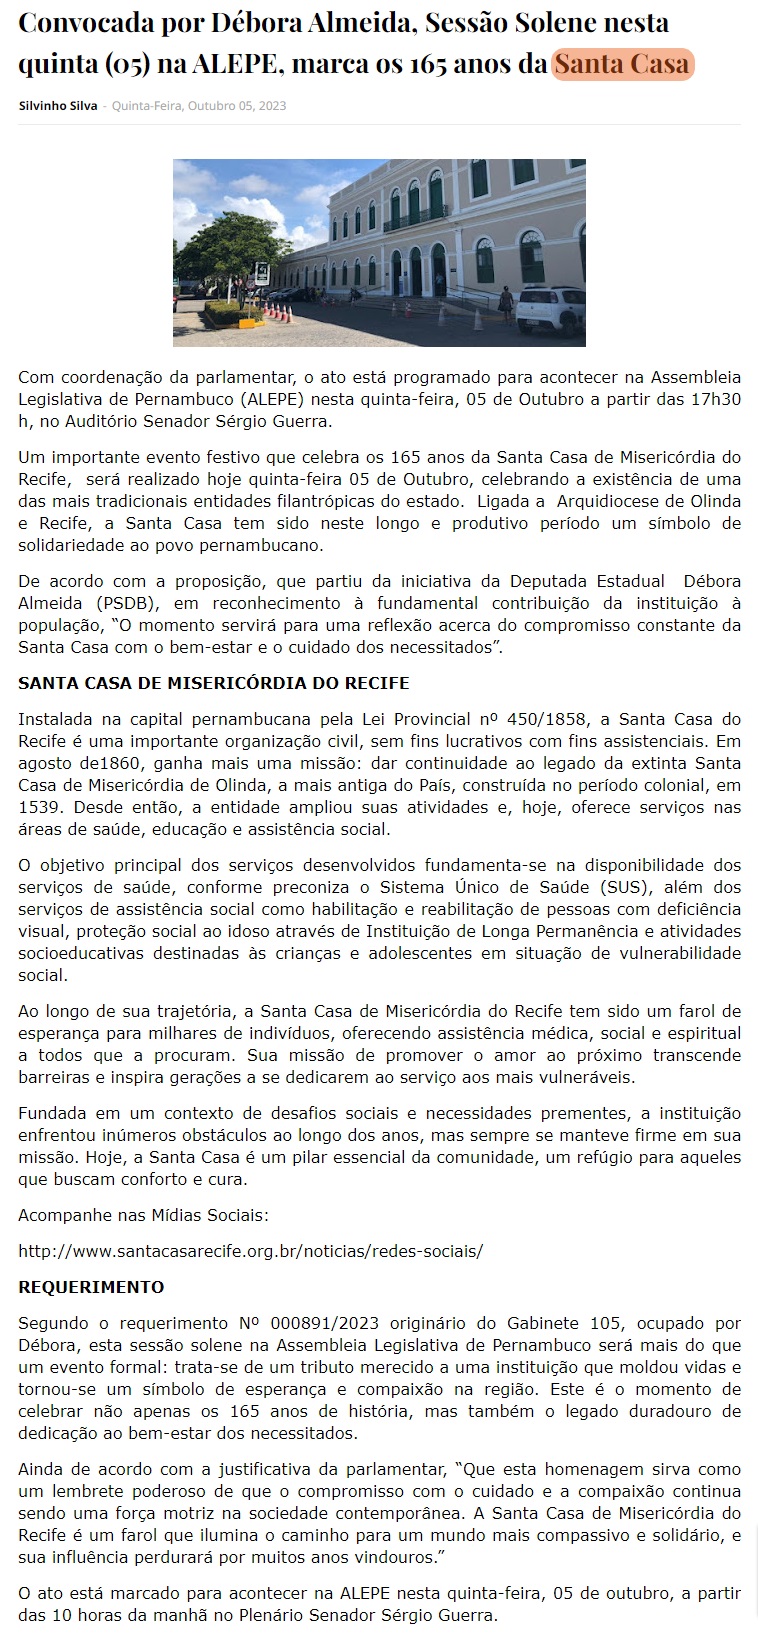 Por iniciativa da Deputada Estadual Débora Almeida, acontece hoje a Sessão Solene em homenagem a SCM